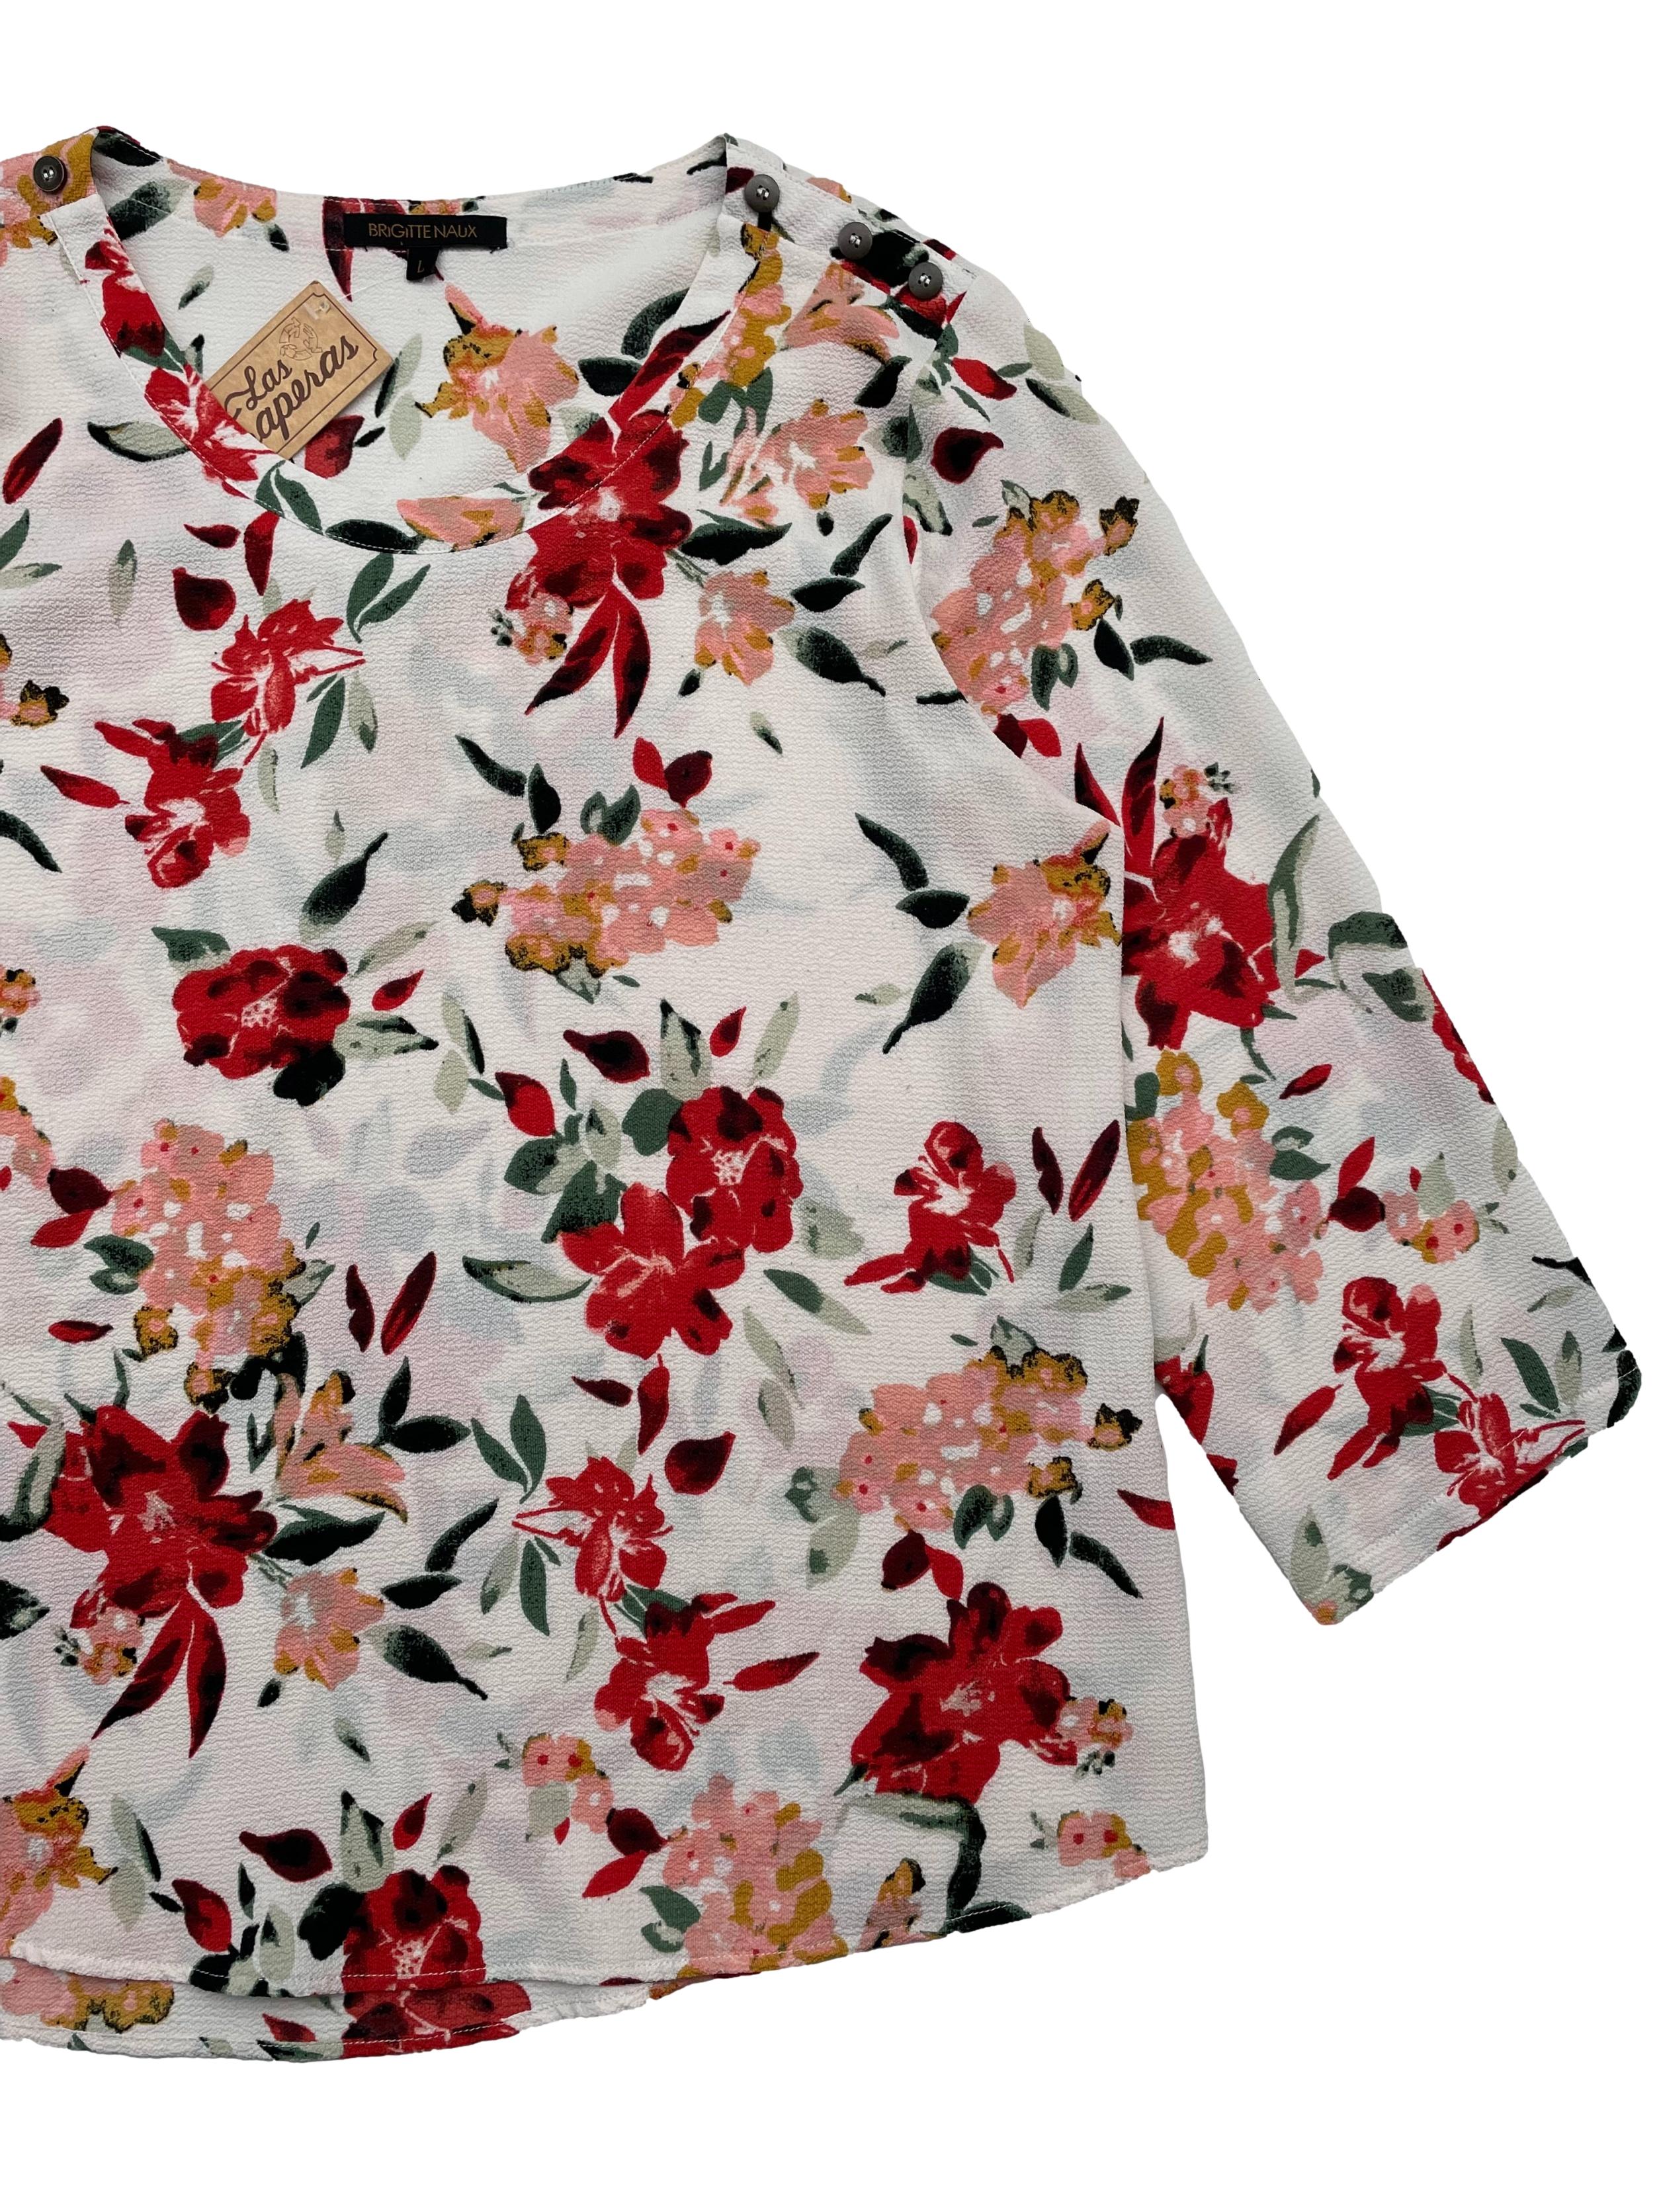 Blusa Brigitte Naux crema con estampado floral en crepe, botones decorativos en hombros.Busto 110cm, Largo 62cm.